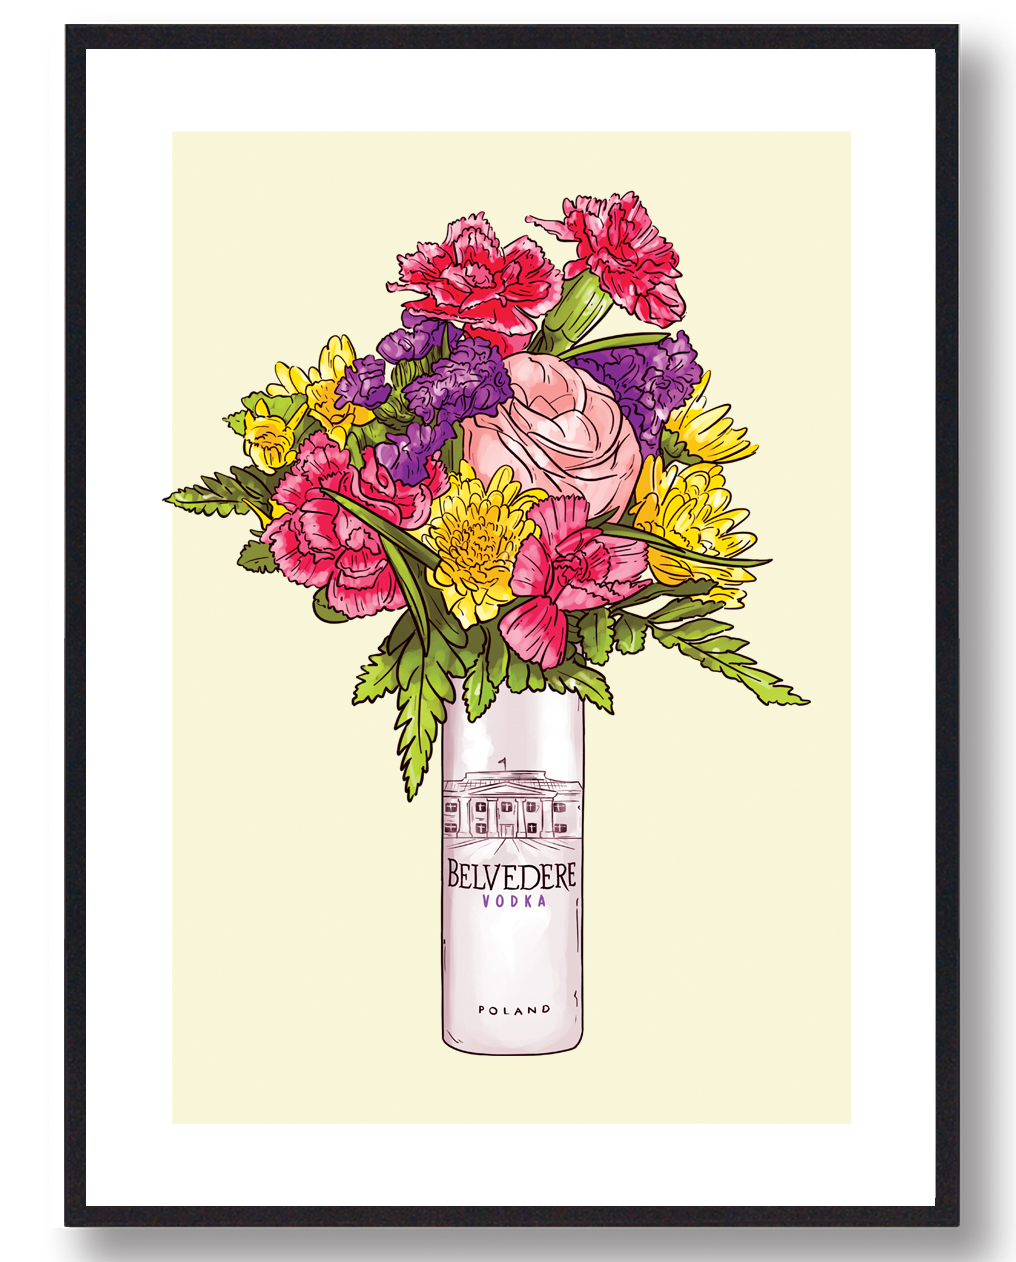 Blomster Belvedere vodka - plakat (gul)